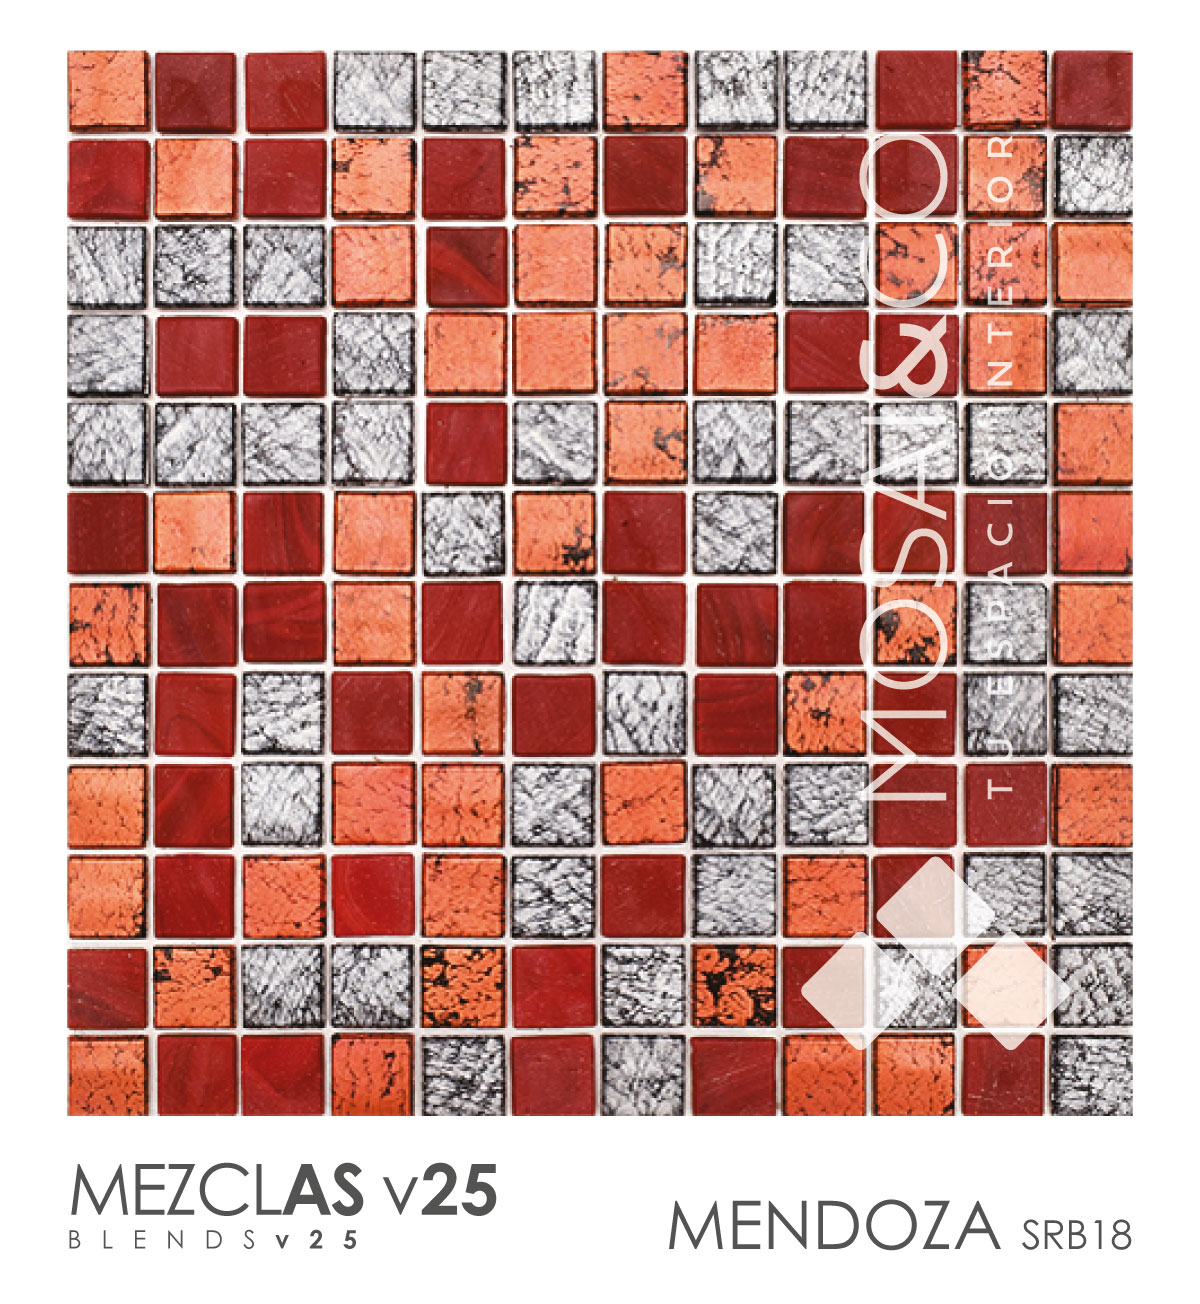 Mezclas-v25-MosaiCo-MENDOZA-SRB18